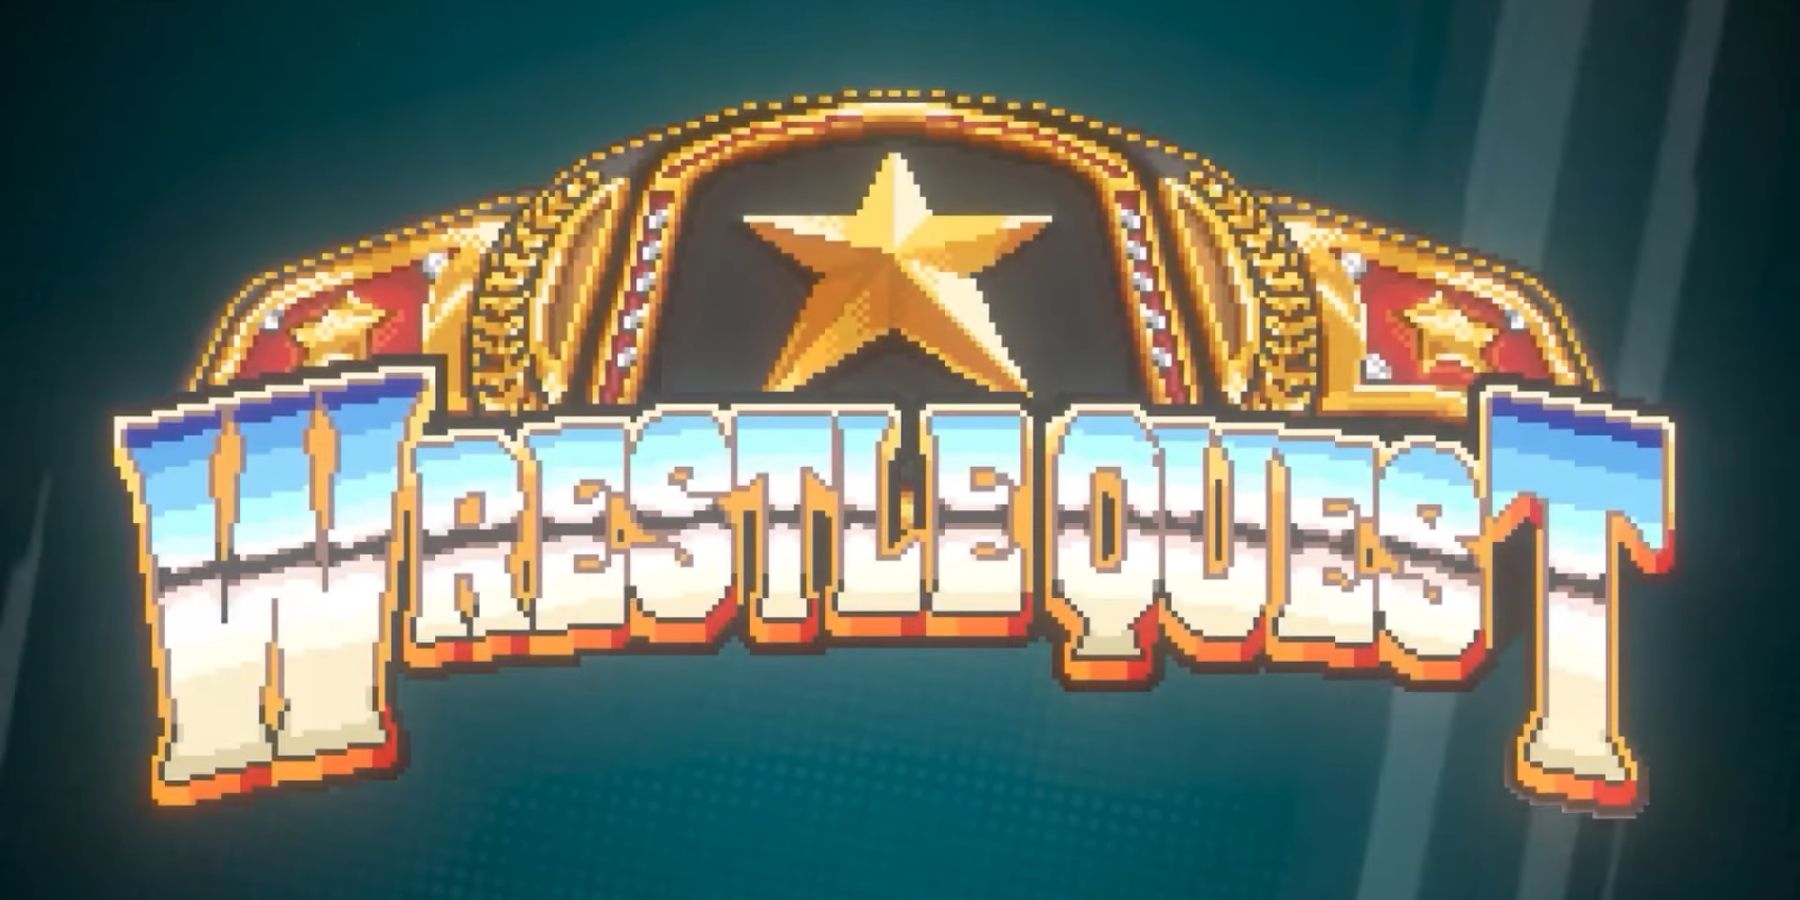 WrestleQuest Wrestlifies RPGs - Xbox Wire